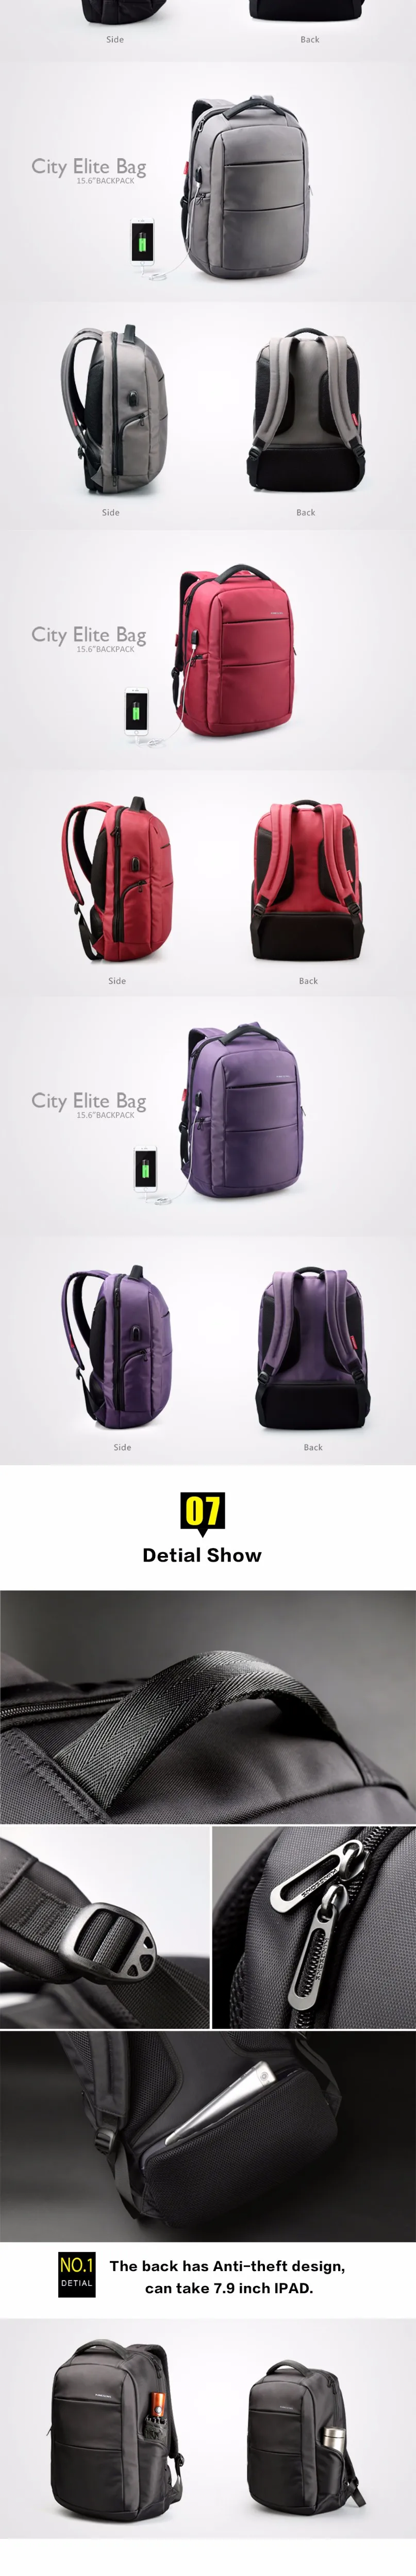 Kingsons мужской женский рюкзак с usb зарядкой, рюкзак для ноутбука с защитой от кражи, 15-15,6 дюймов, водонепроницаемые школьные сумки для подростков, мальчиков и девочек